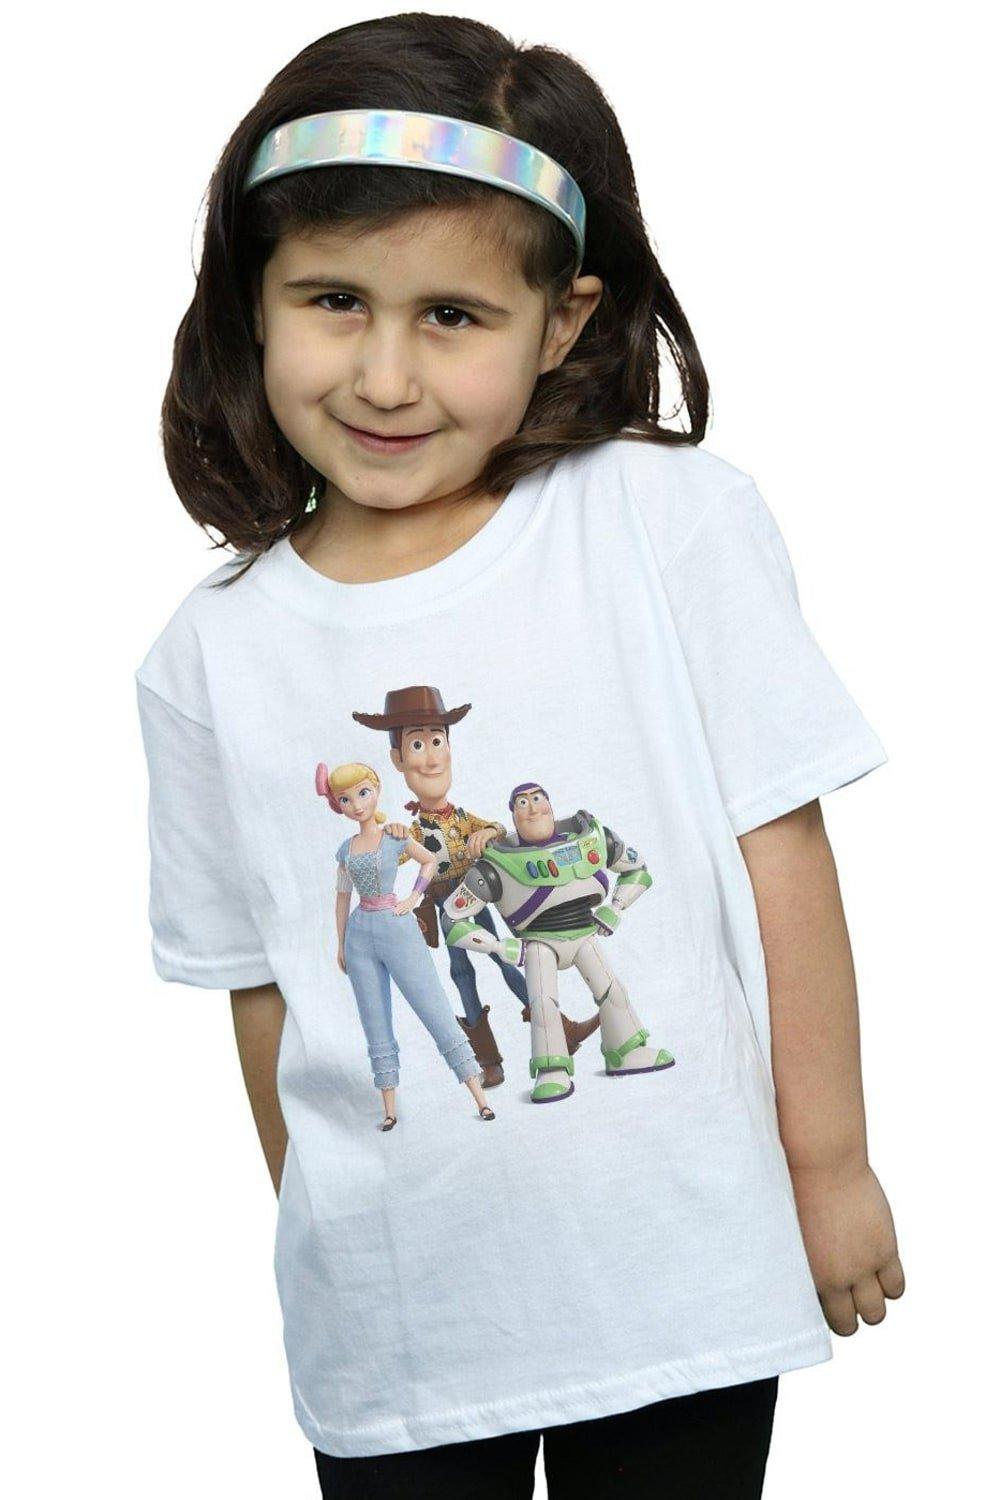 Хлопковая футболка «История игрушек 4: Вуди Базз и Бо Пип» Disney, белый пазлы история игрушек шериф бо пип и рекс детская логика